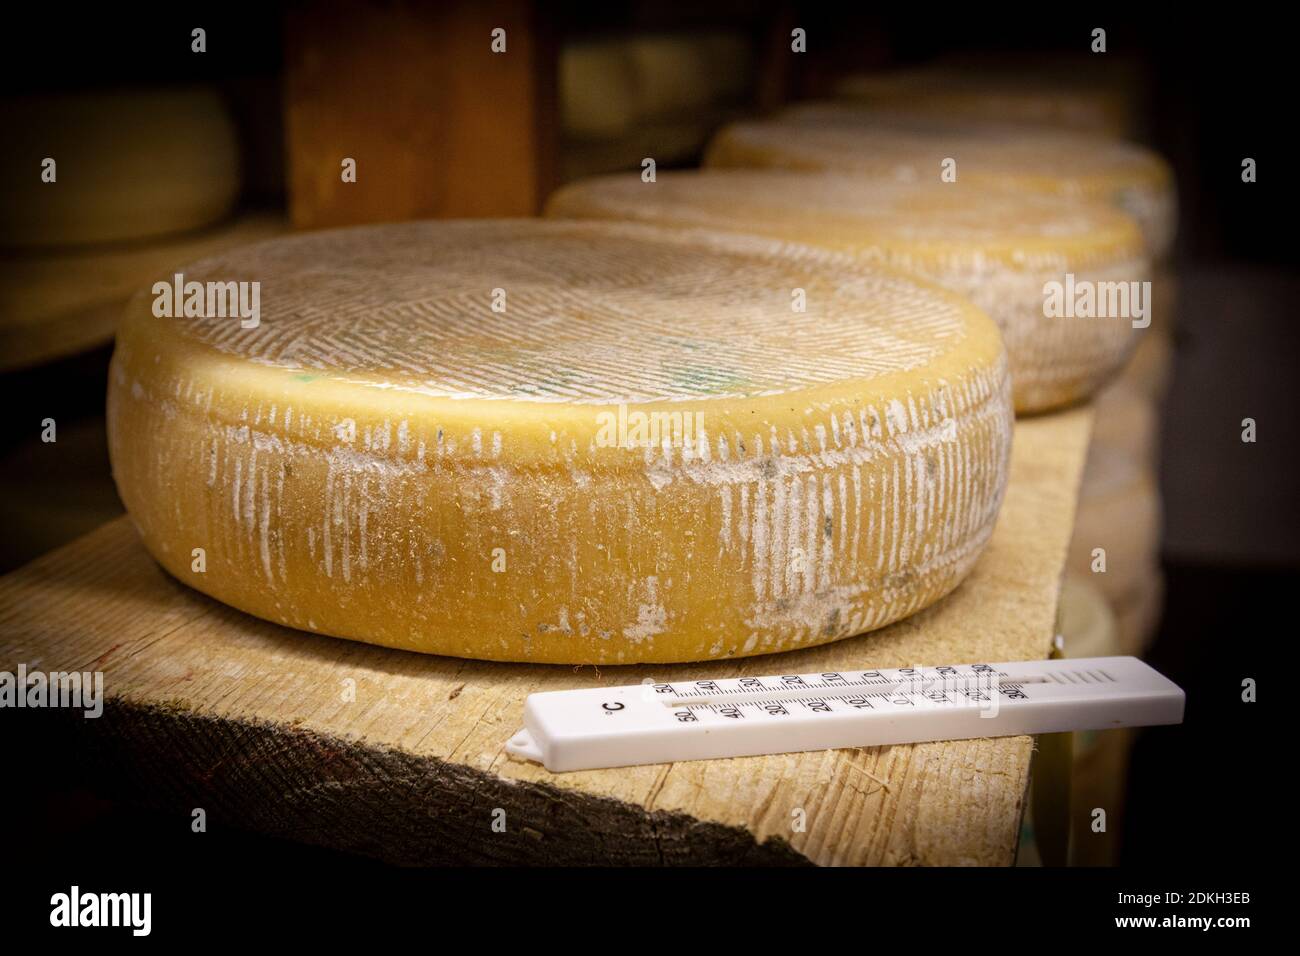 Italy, Veneto, Belluno, Seren del Grappa, typical cheeses (Morlacco and Bastardo del Grappa) in the cellar for aging Stock Photo